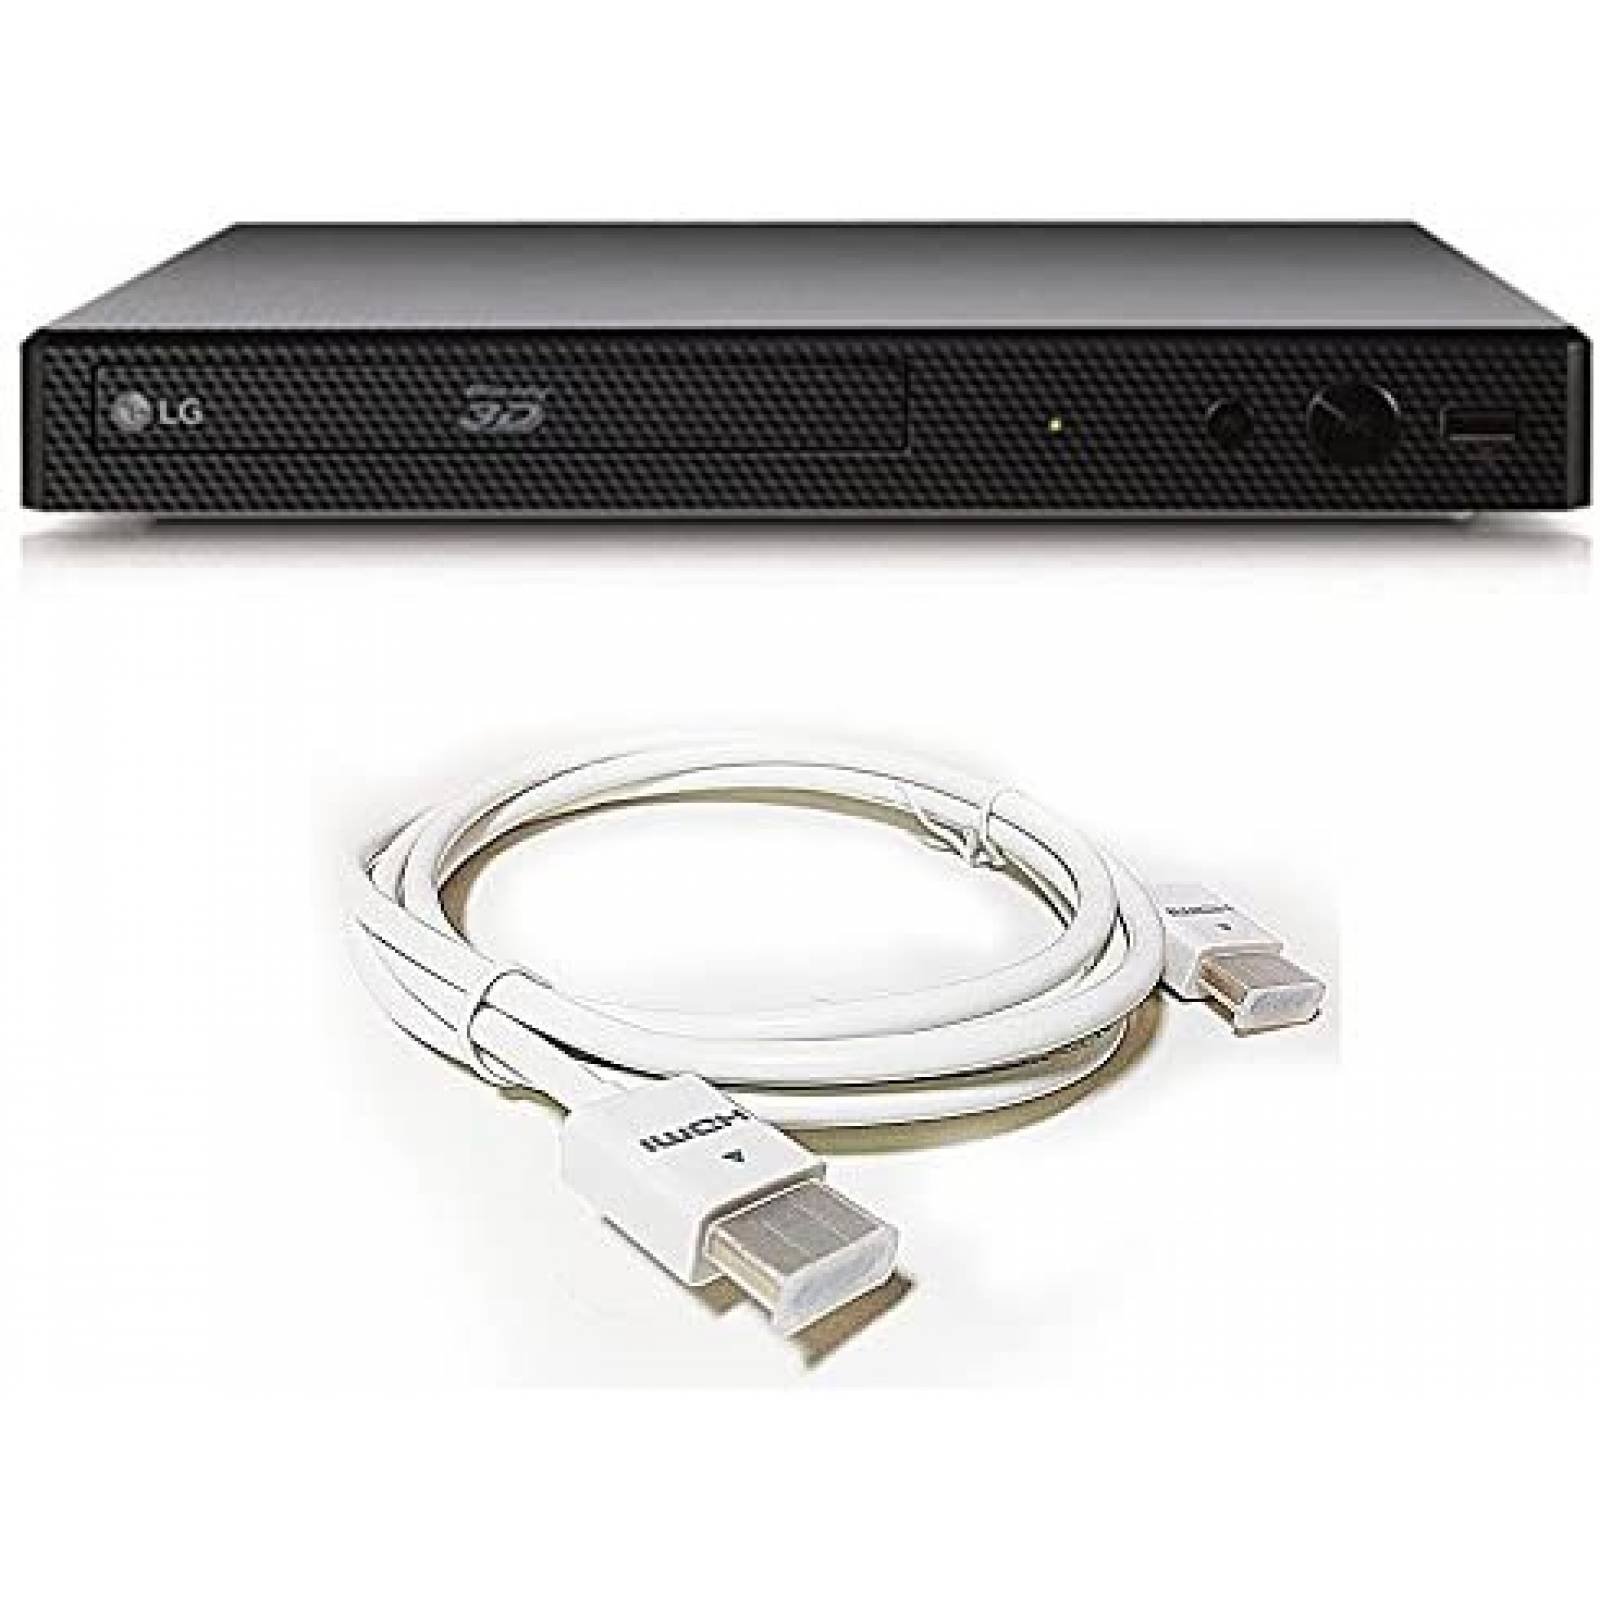 Reproductor Blu-Ray LG Smart 3D - DVD - CD - USB - HDMI - 270mm - Negro -  BP325